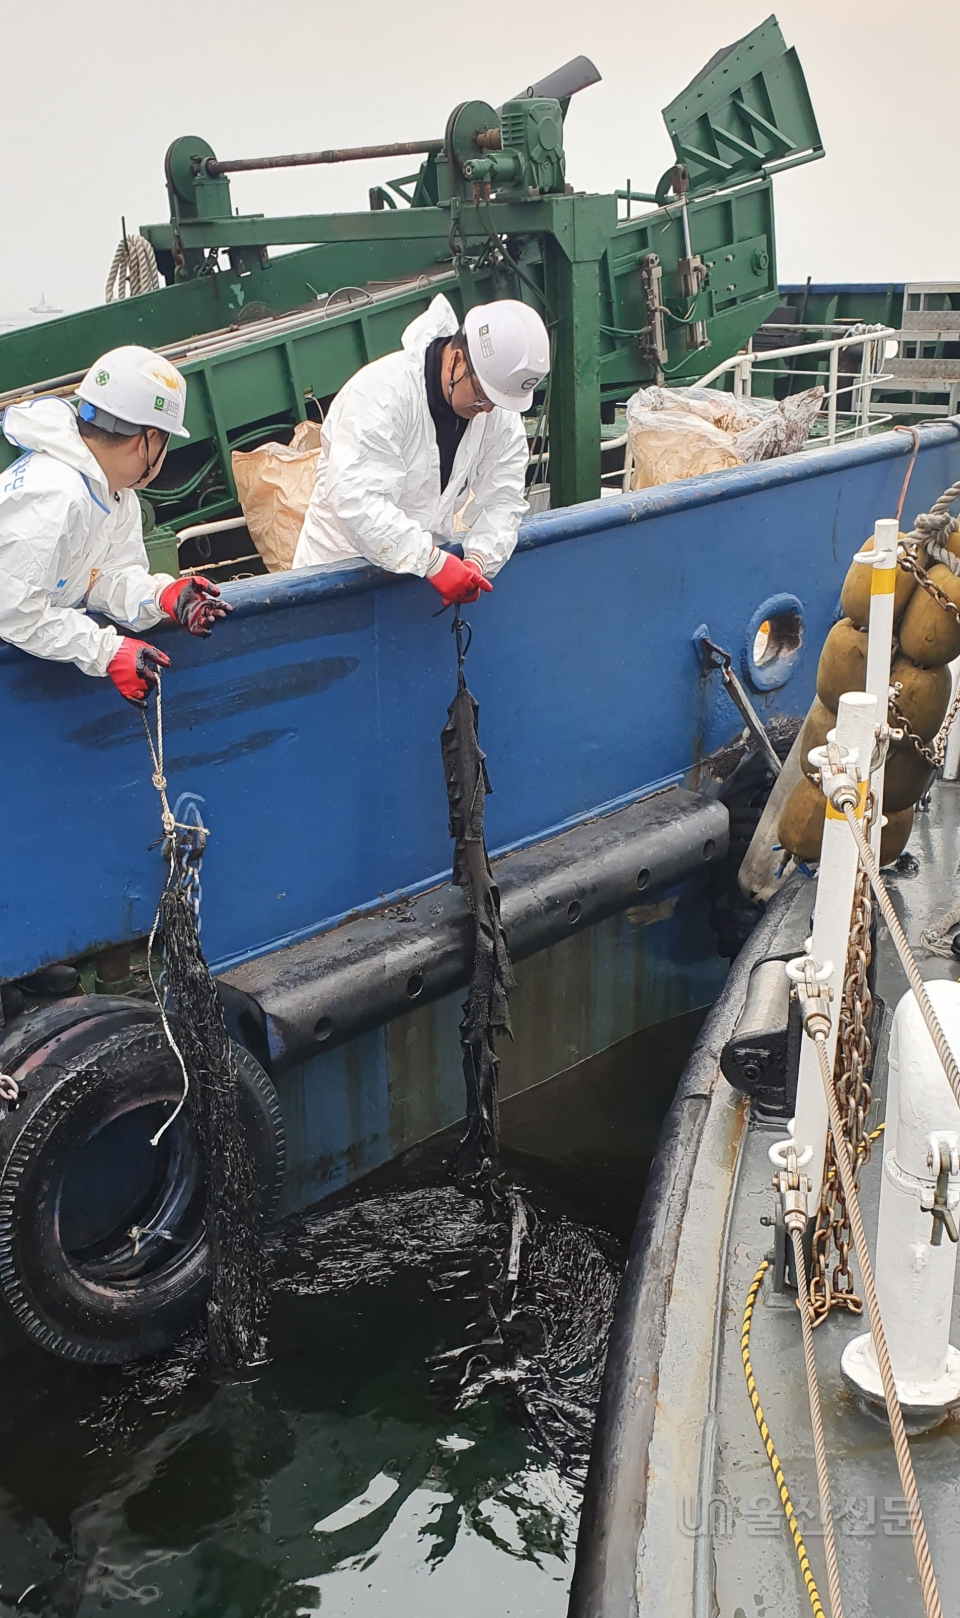 지난 11일 울산시 울주군 앞바다에 있는 한국석유공사 원유이송시설(부이)에서 기름이 유출돼 방제 작업이 진행되고 있다. 울산해양경찰서 제공